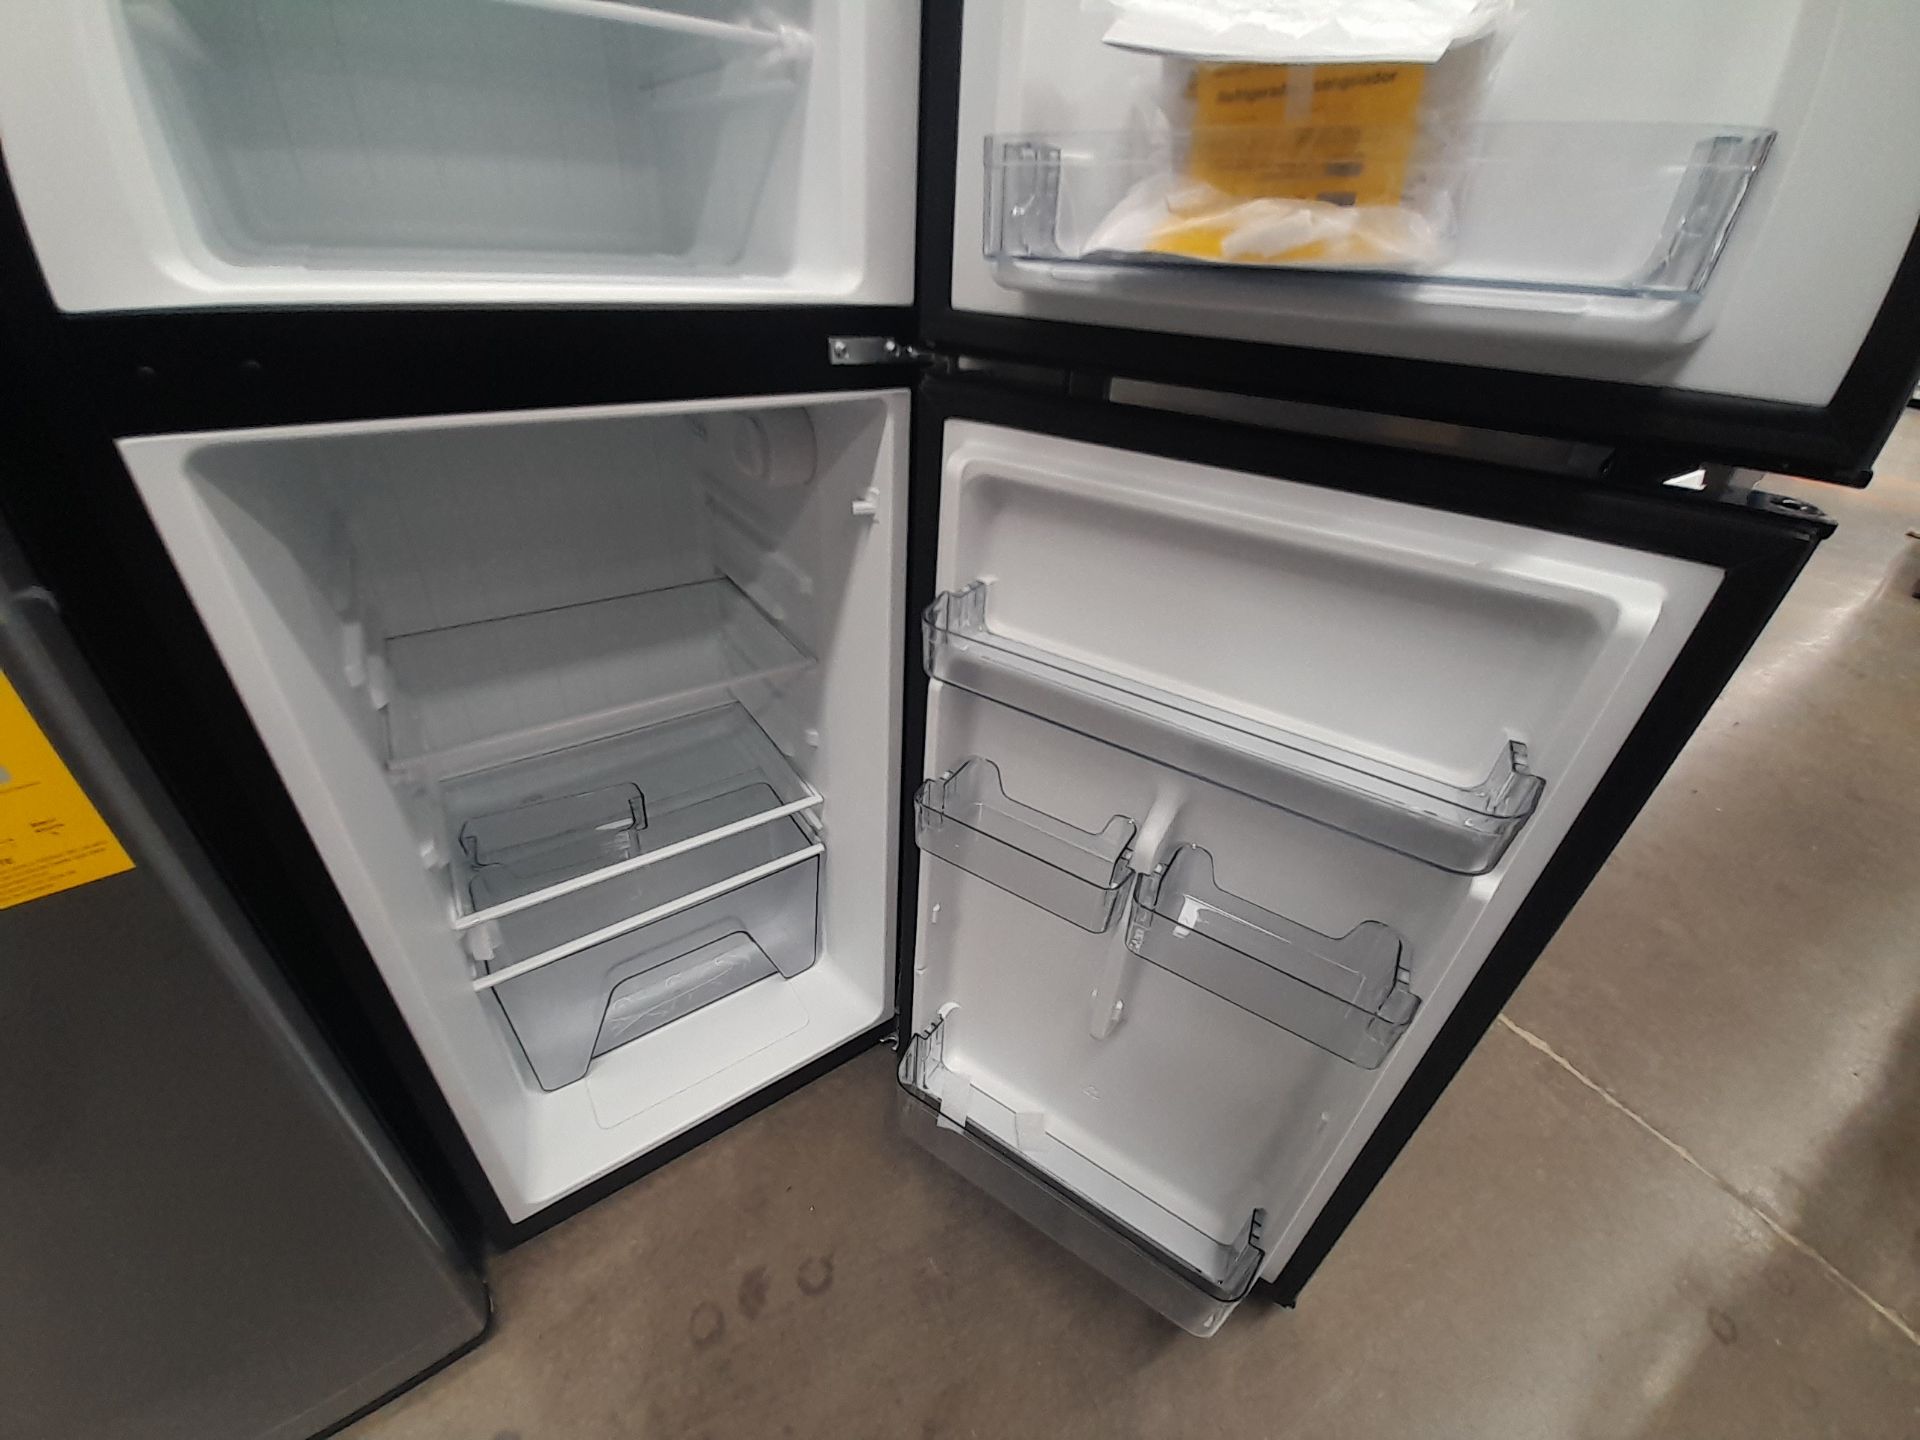 Lote de 2 refrigeradores contiene: 1 refrigerador Marca GALANZ, Modelo GLR55TS1, Serie ND, Colo - Image 5 of 8